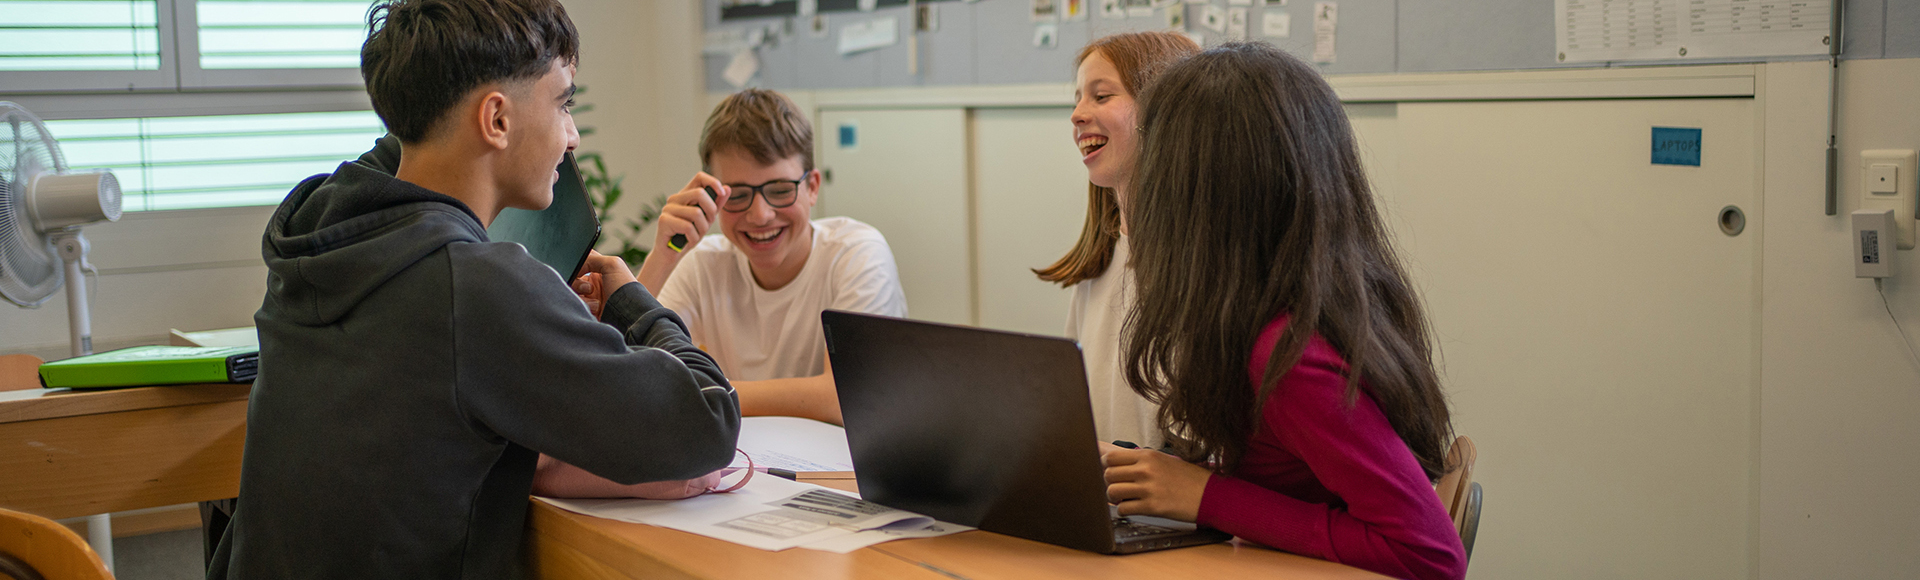 Vier Schüler diskutieren an einem Pult und zeigen sich Dinge auf dem Laptop